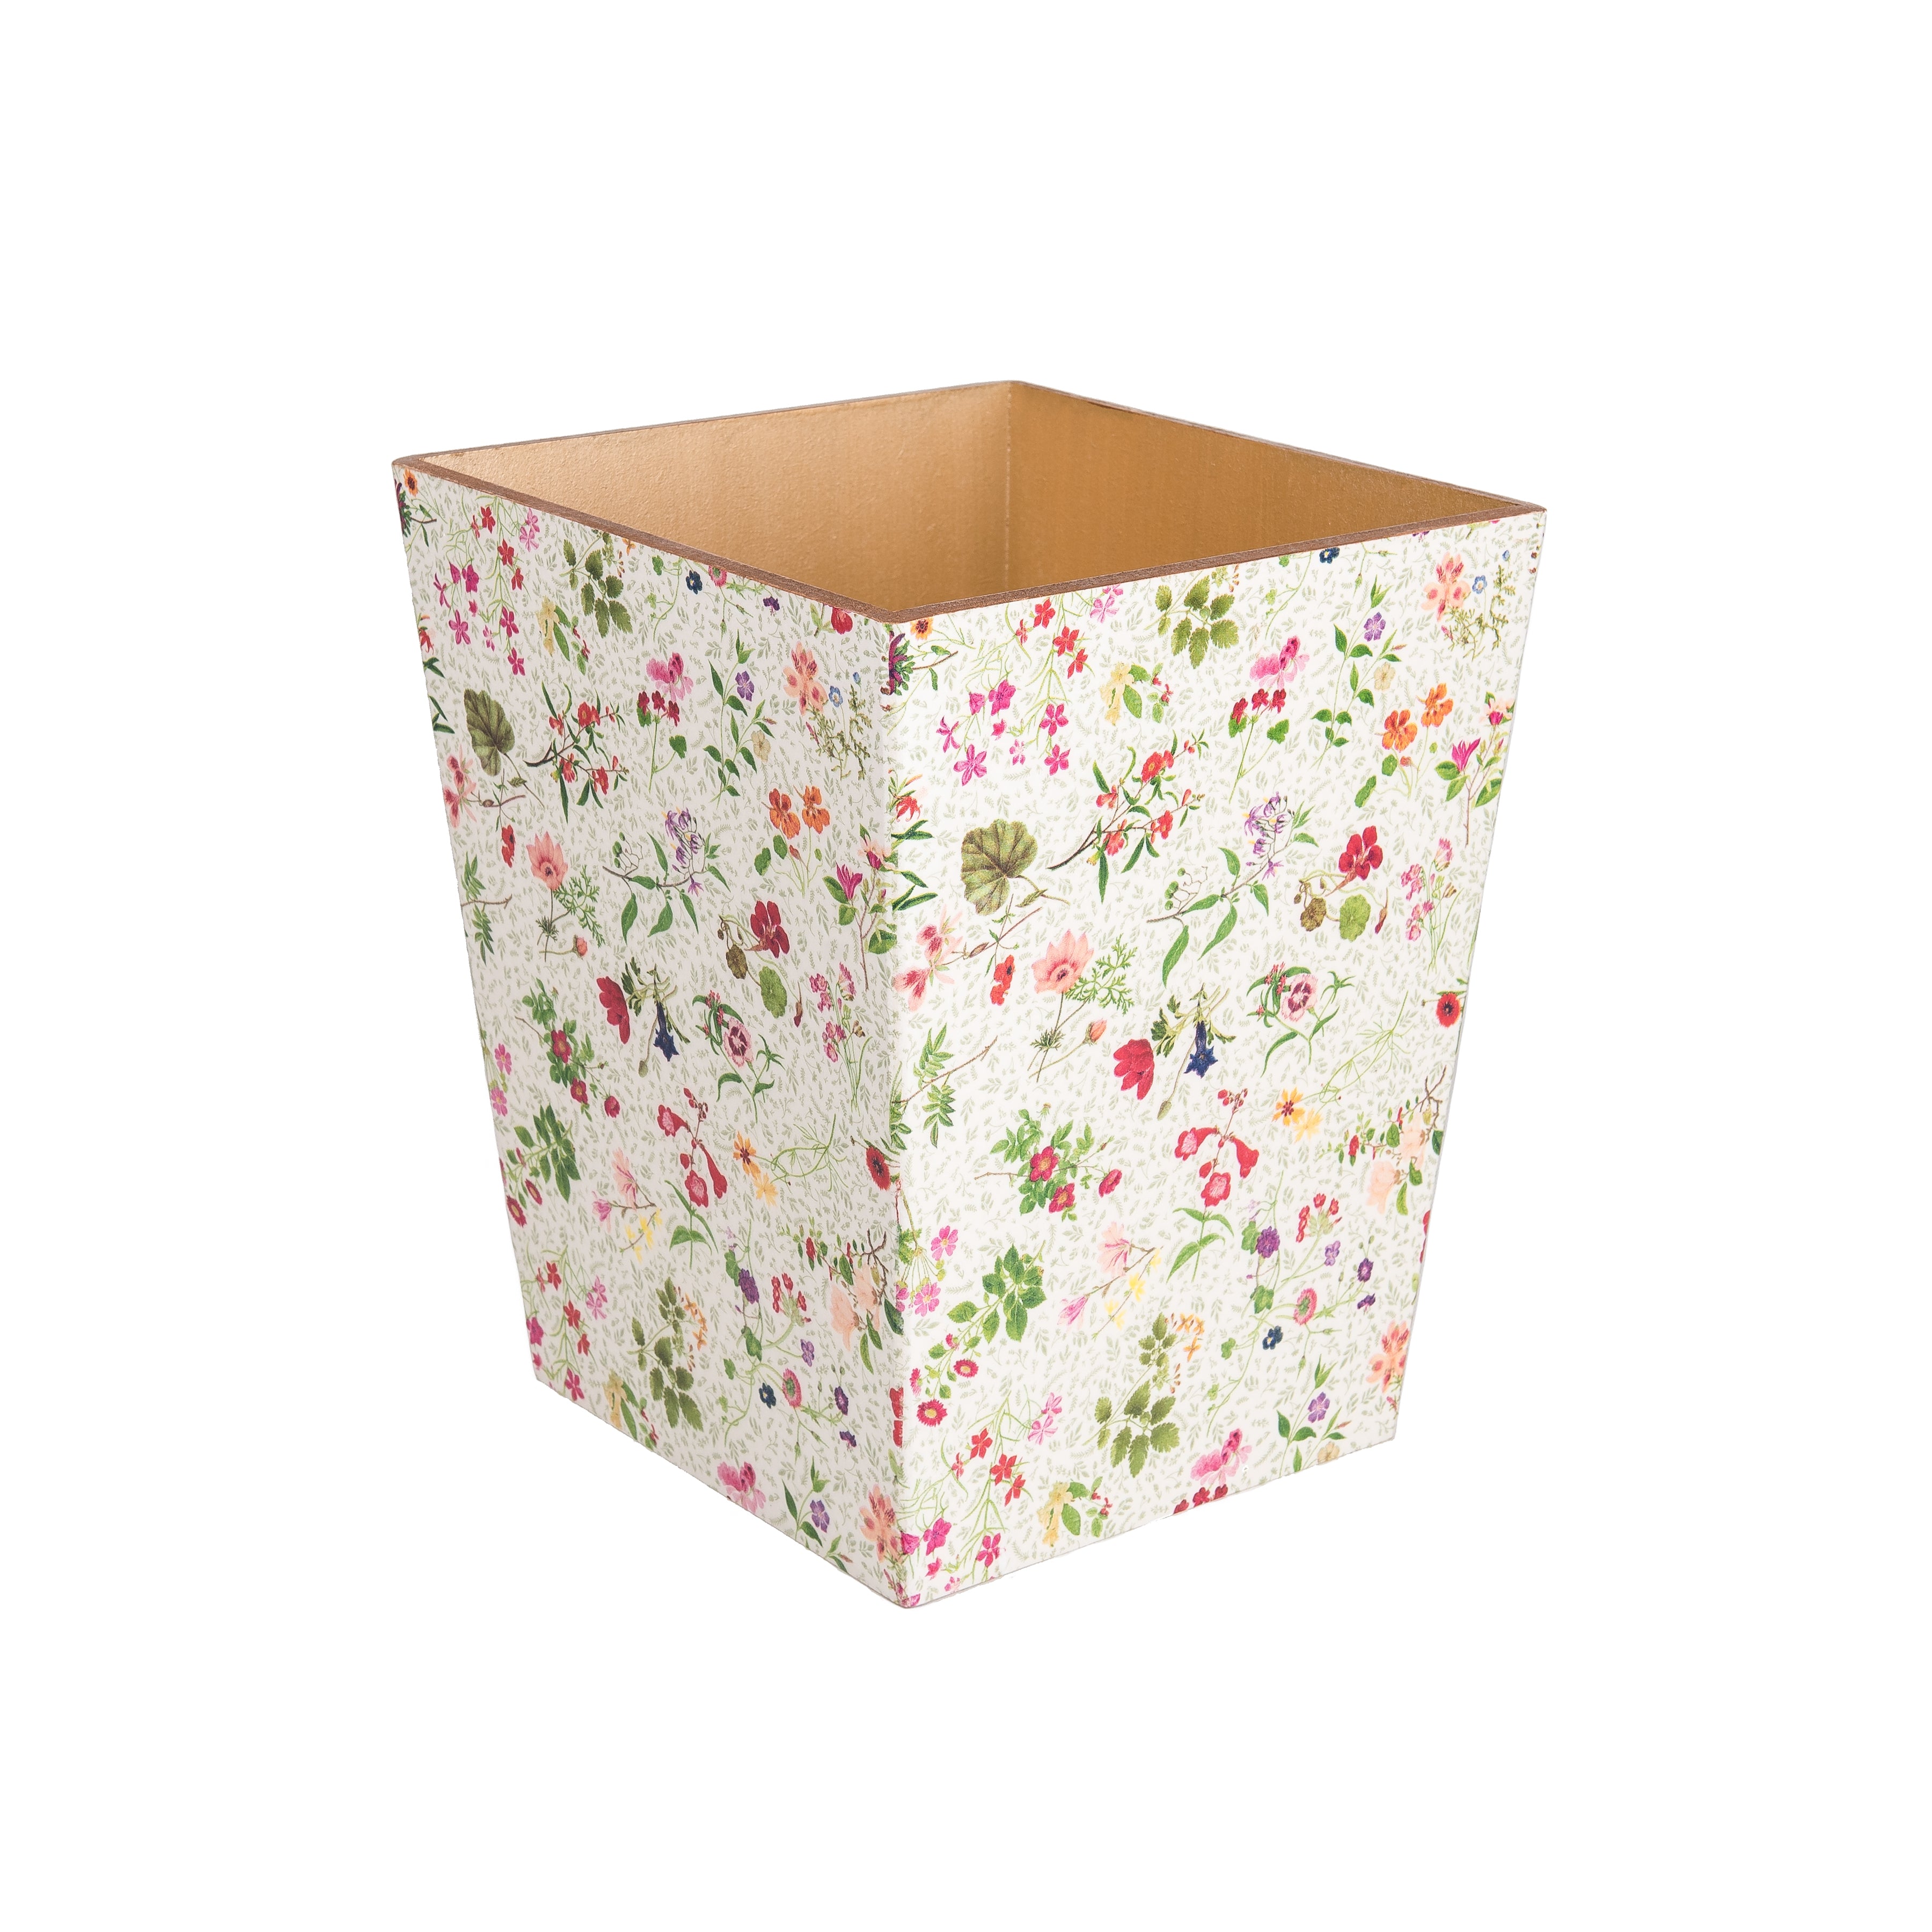 English Garden matching waste bin & tissue box